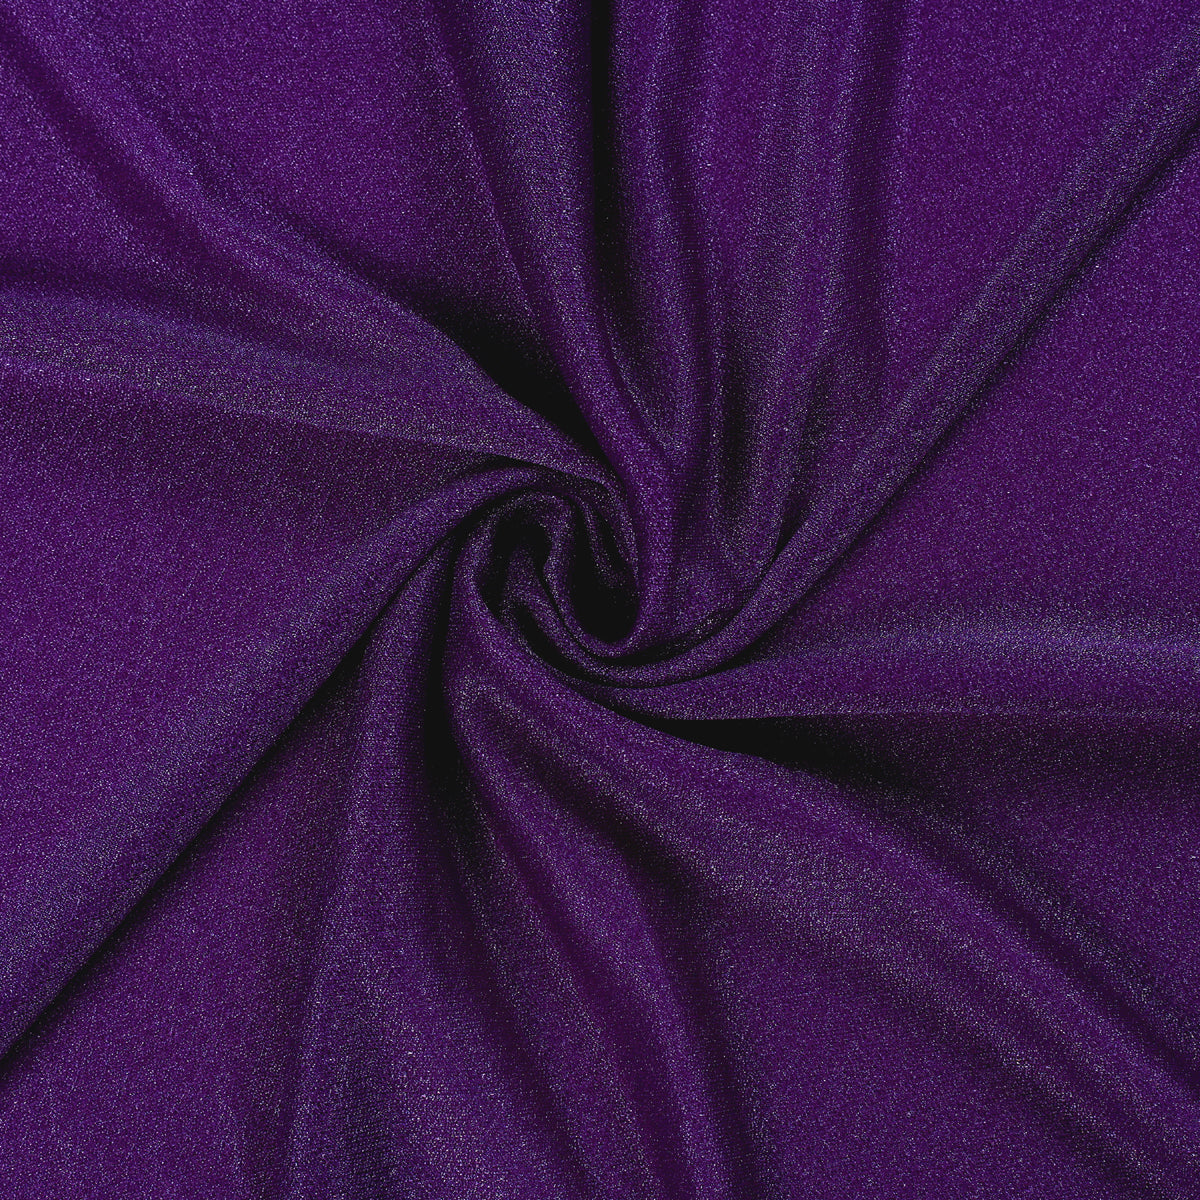 Purple,a22562c8-899a-40ae-ac1c-8f9f1323aa70